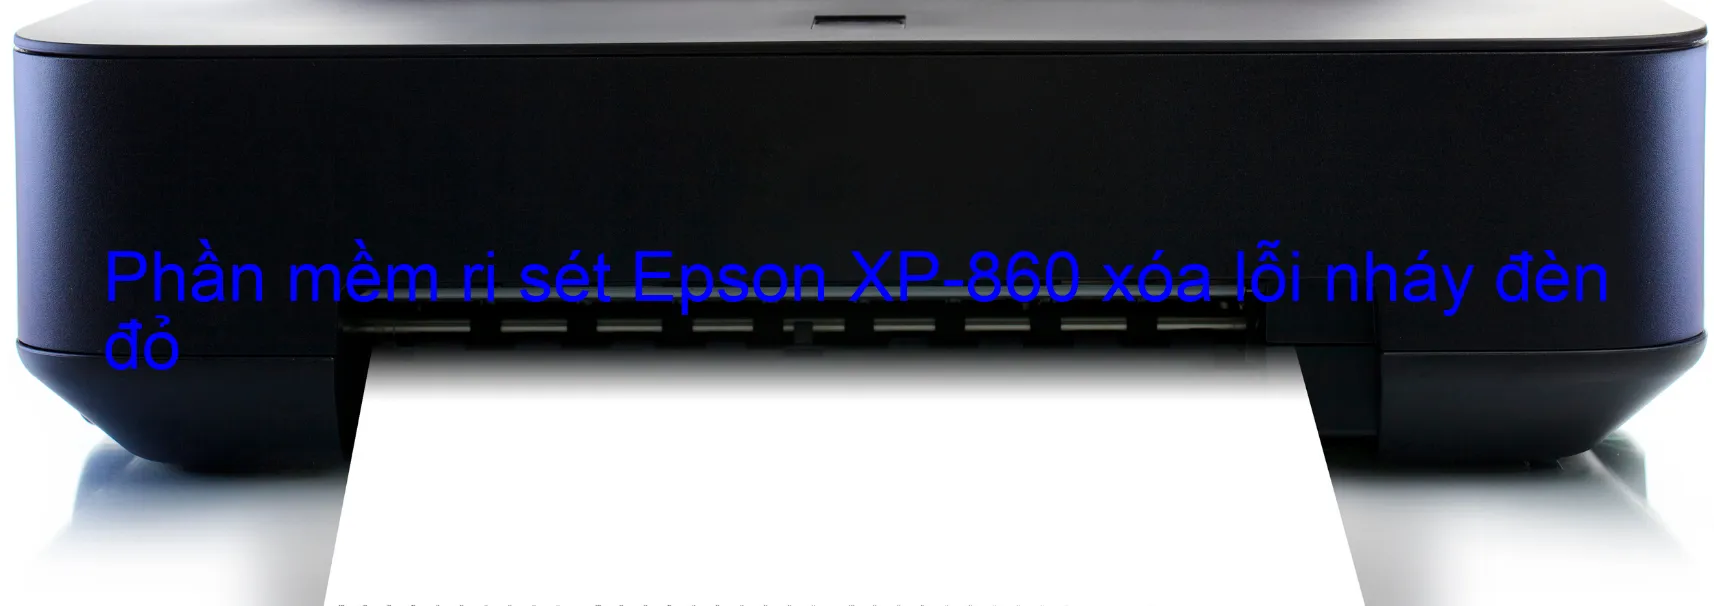 Phần mềm reset Epson XP-860 xóa lỗi nháy đèn đỏ